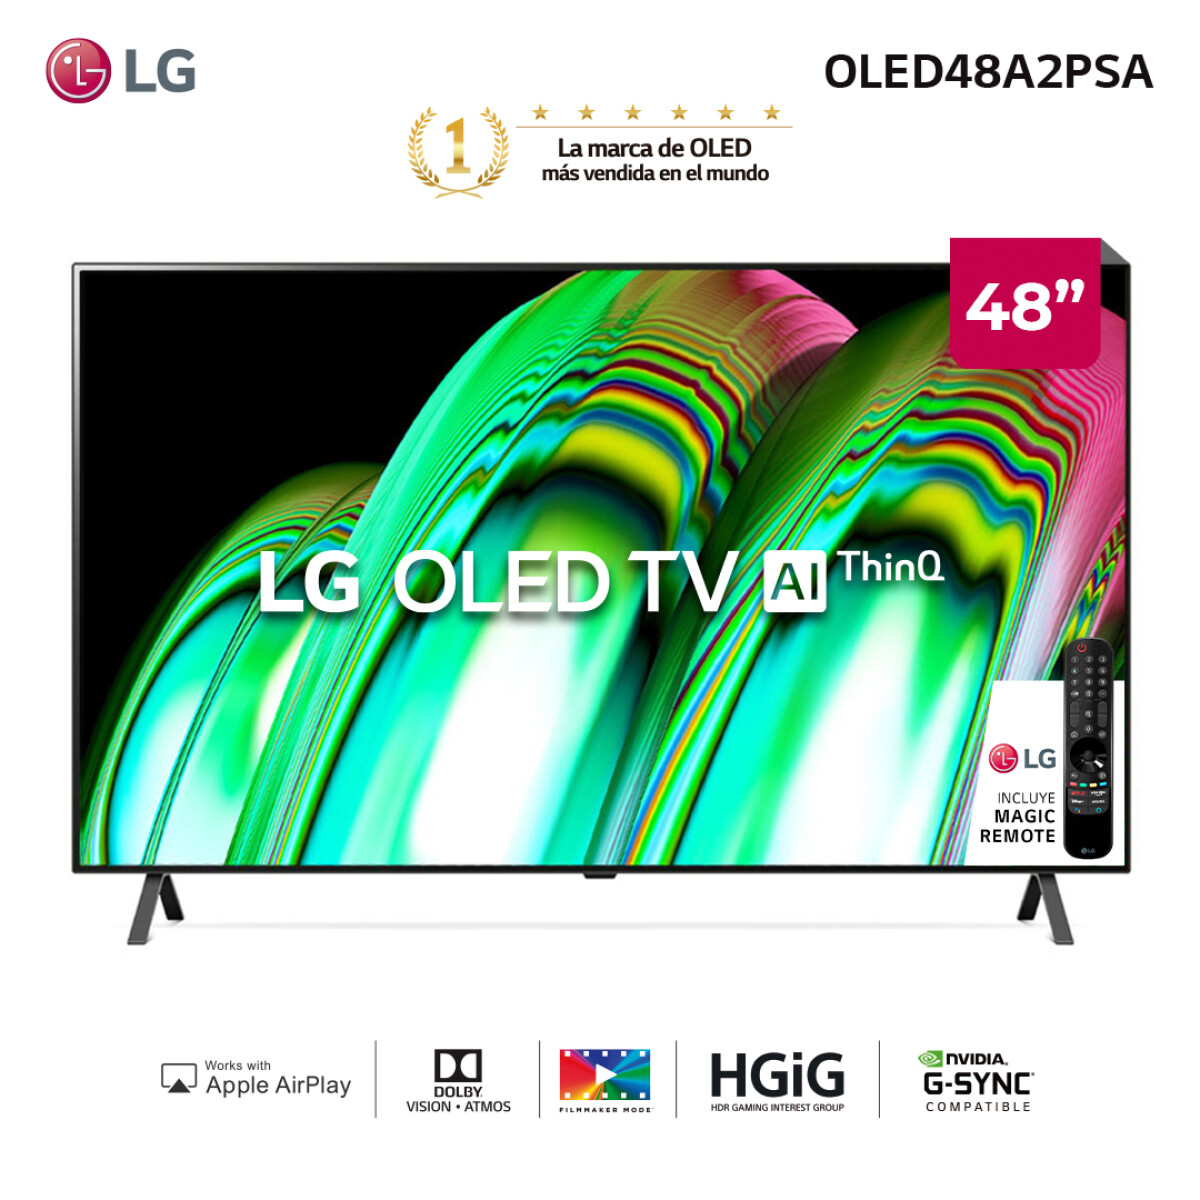 LG OLED 4K 55" OLED48A2PSA AI Smart TV 